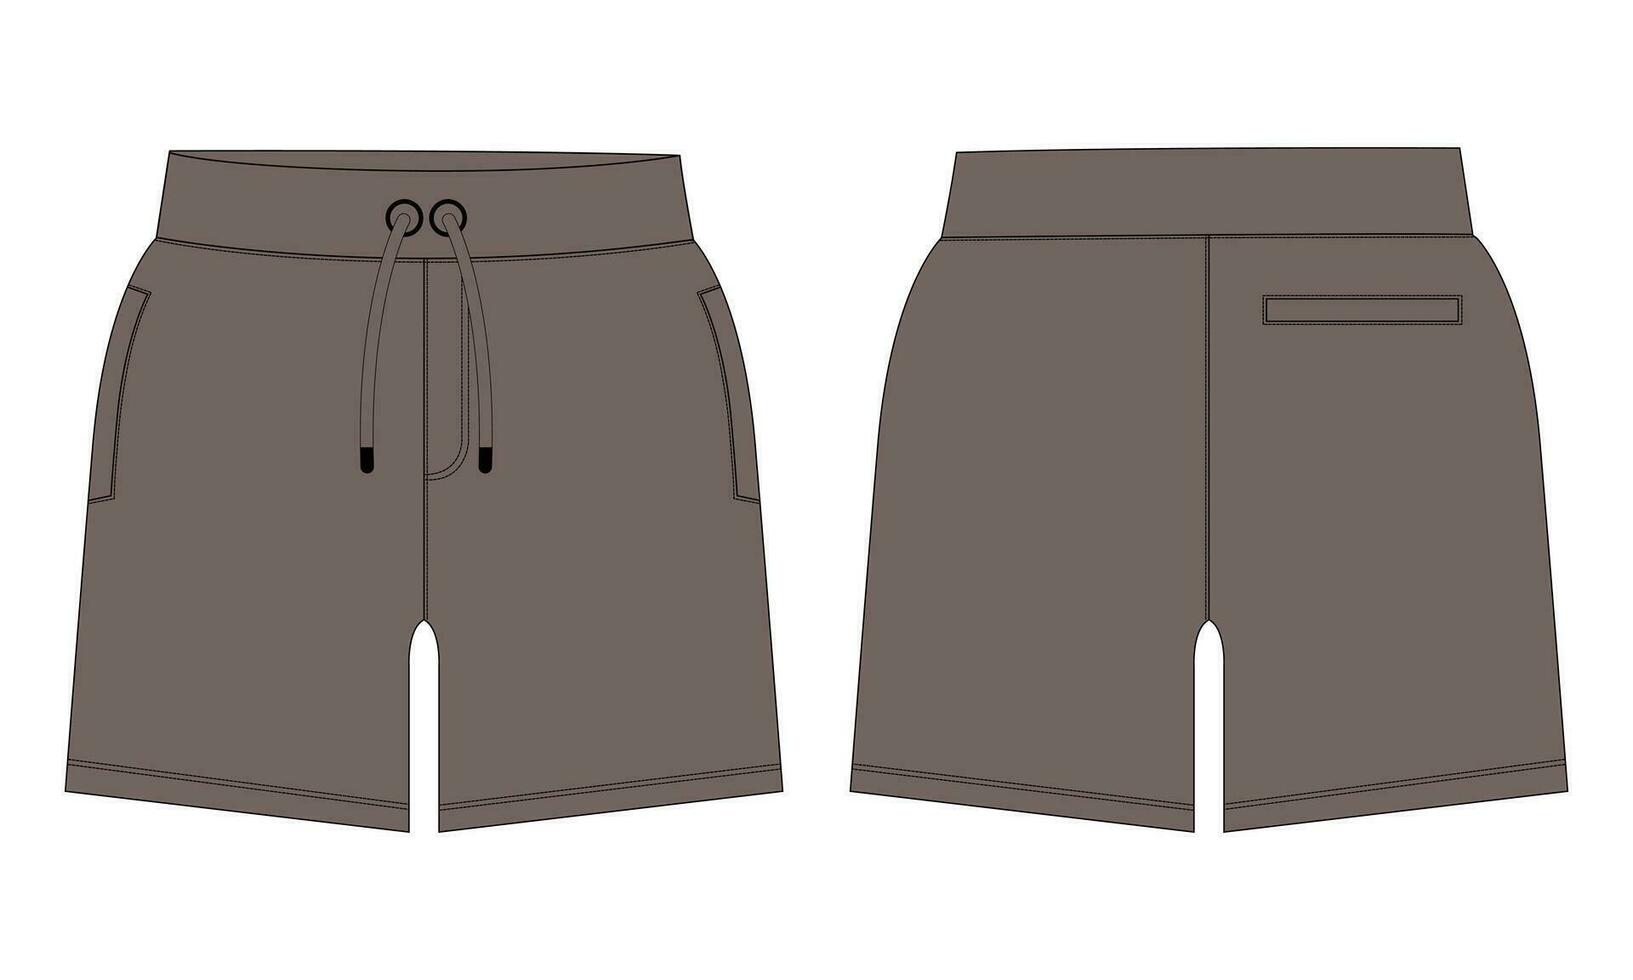 fleece kleding stof jogger zweet shorts broek vector illustratie sjabloon voorkant, terug keer bekeken